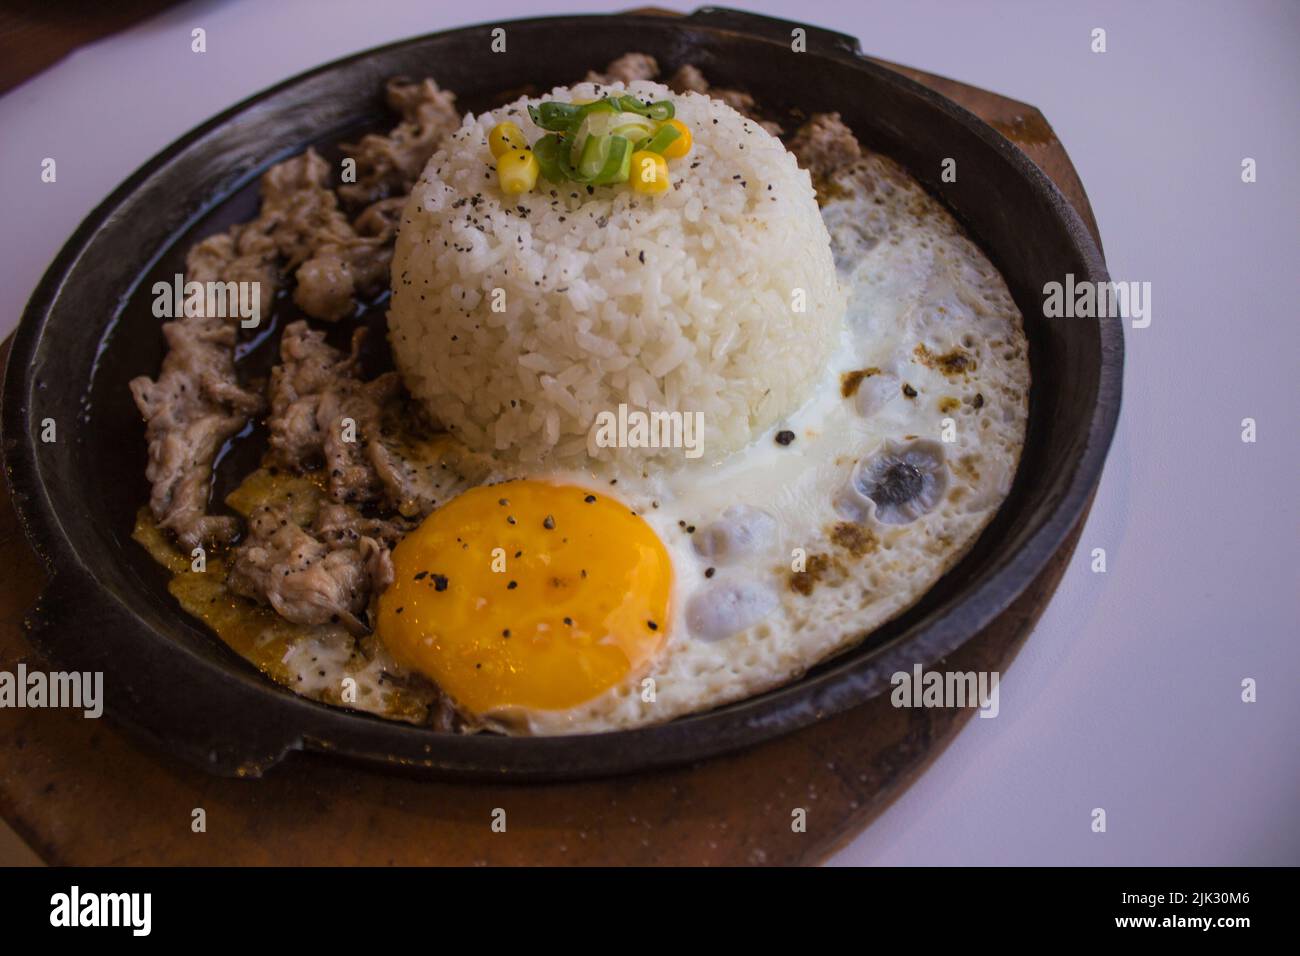 desayuno con arroz, huevo frito y carne o ternera con guarnición de maíz y puerro plato caliente aislado sobre fondo blanco Foto de stock